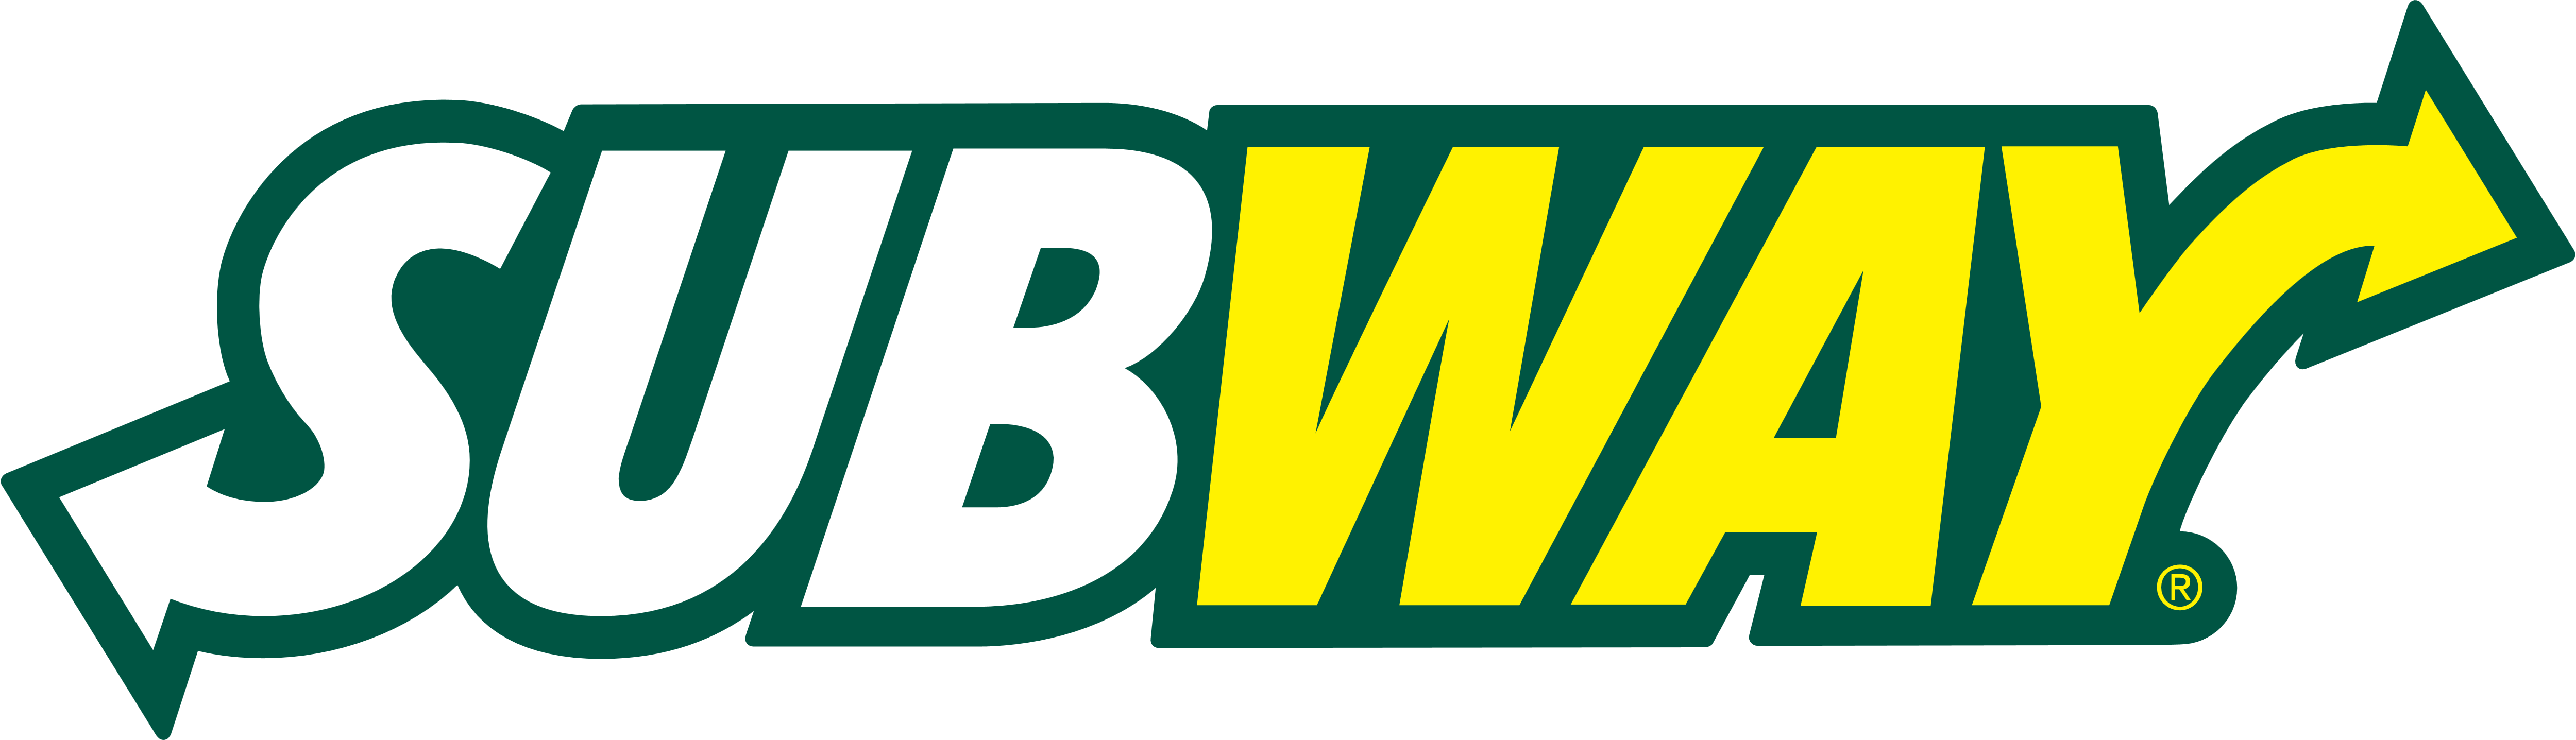 Subway logo, logotype, emblem